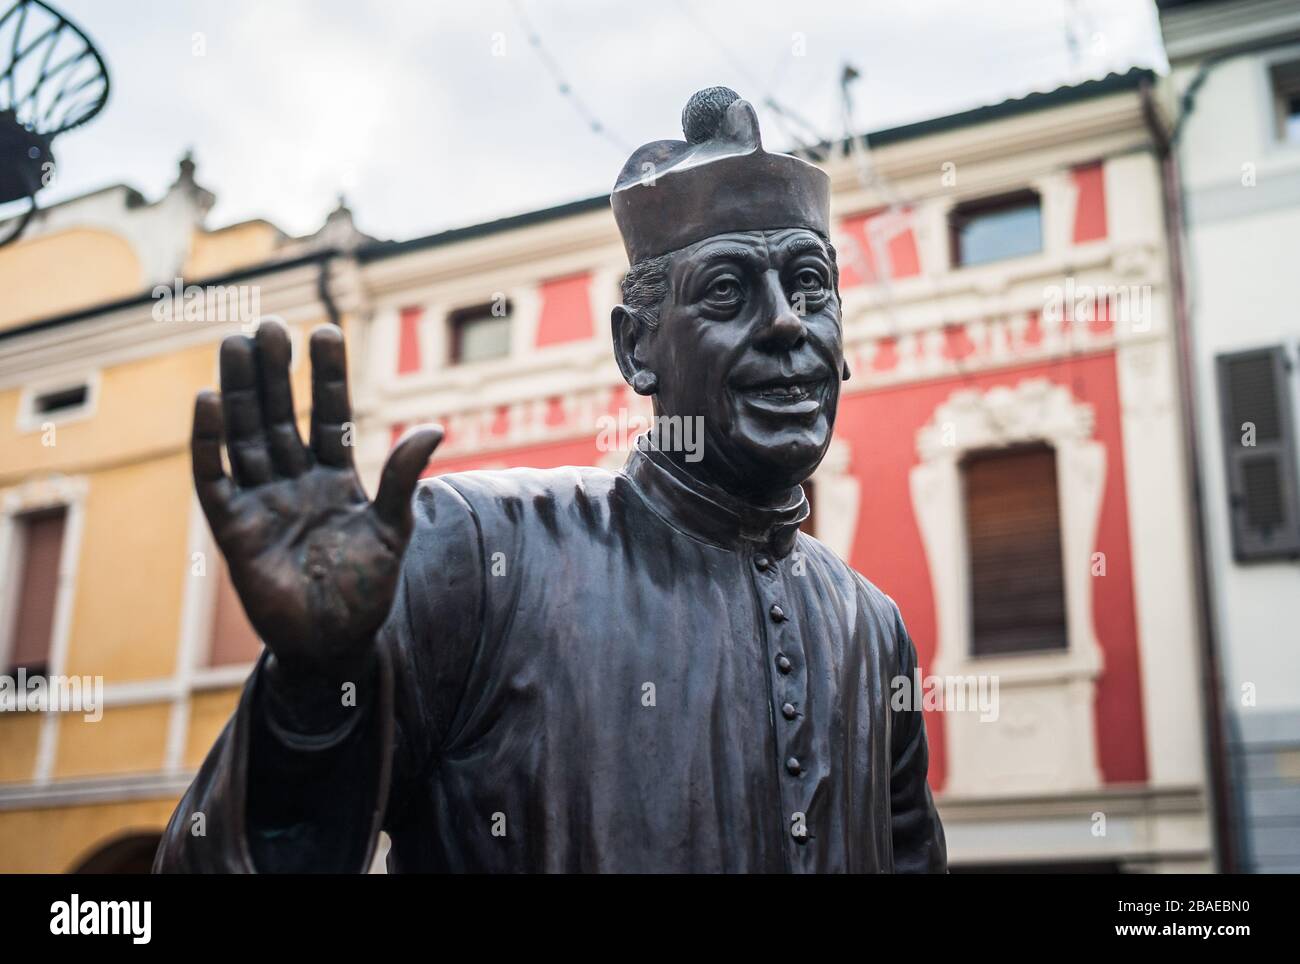 Brescello, Italie - 1er janvier 2014 : statue de bronze de Don Camillo à Brescello, un célèbre personnage de cinéma basé sur les livres de Giovannino Guareschi. Banque D'Images